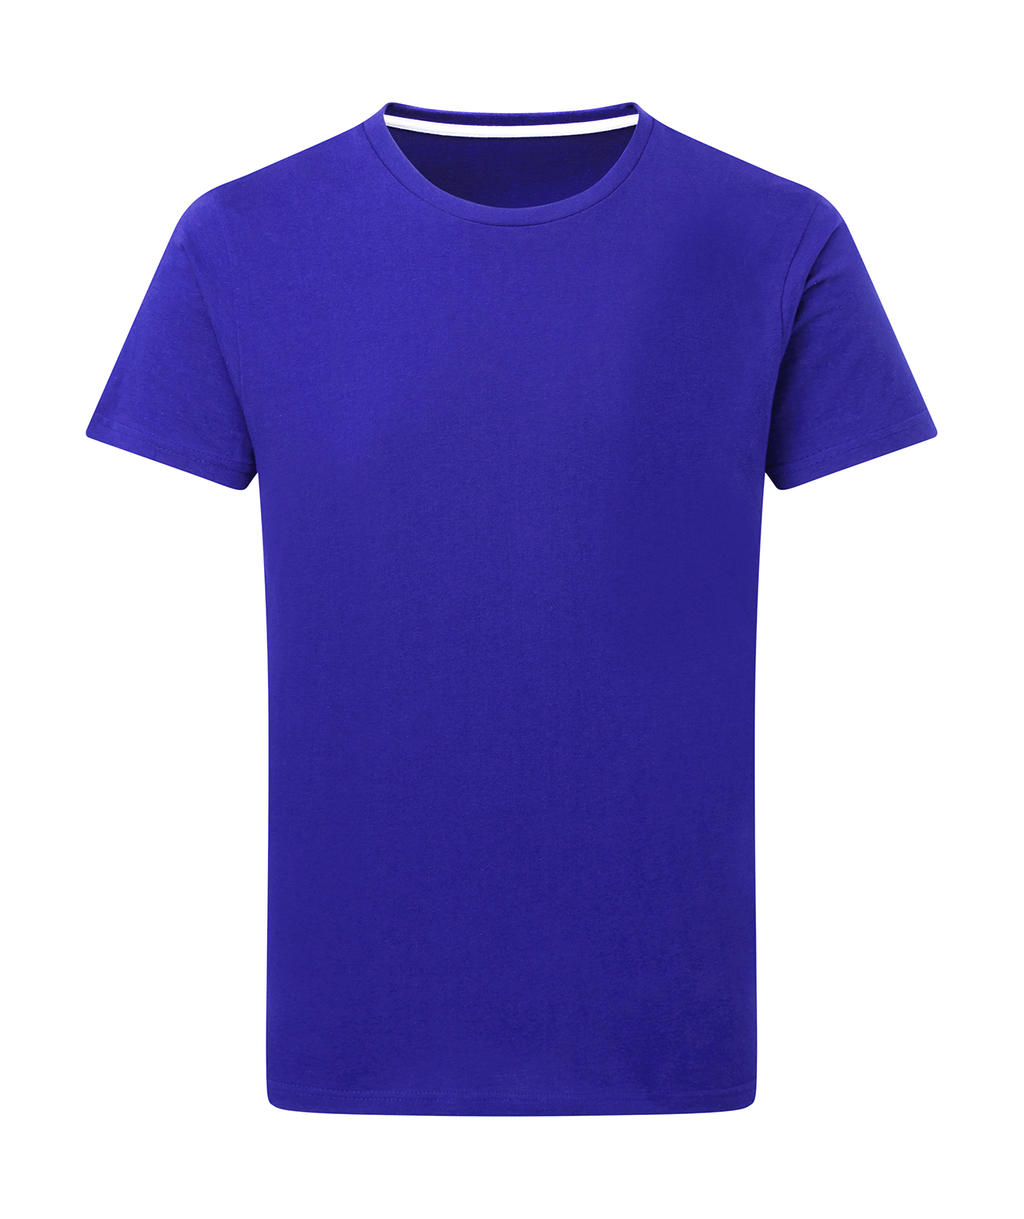 Dokonale potlačiteľné tričko bez štítku - royal blue